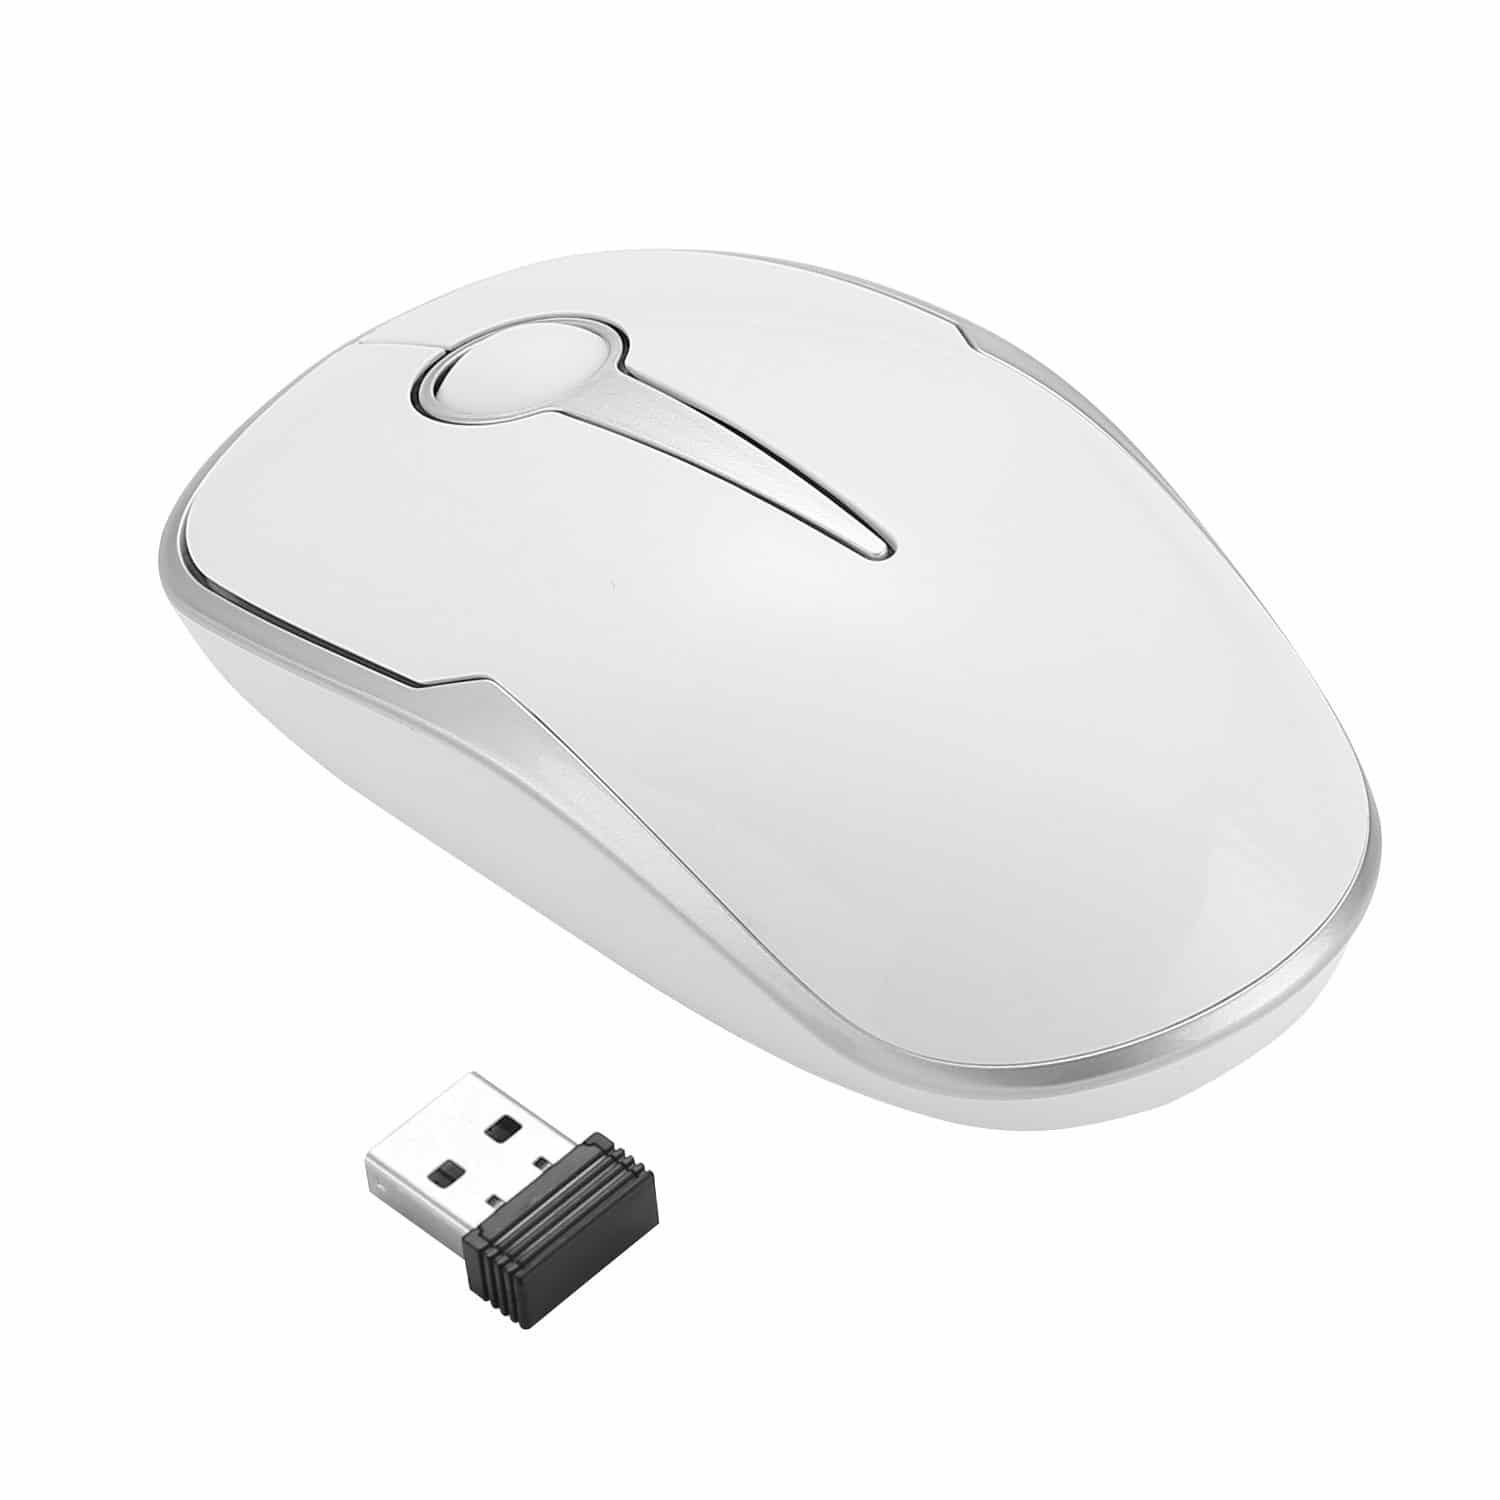 I migliori mouse wireless da acquistare nel 2022